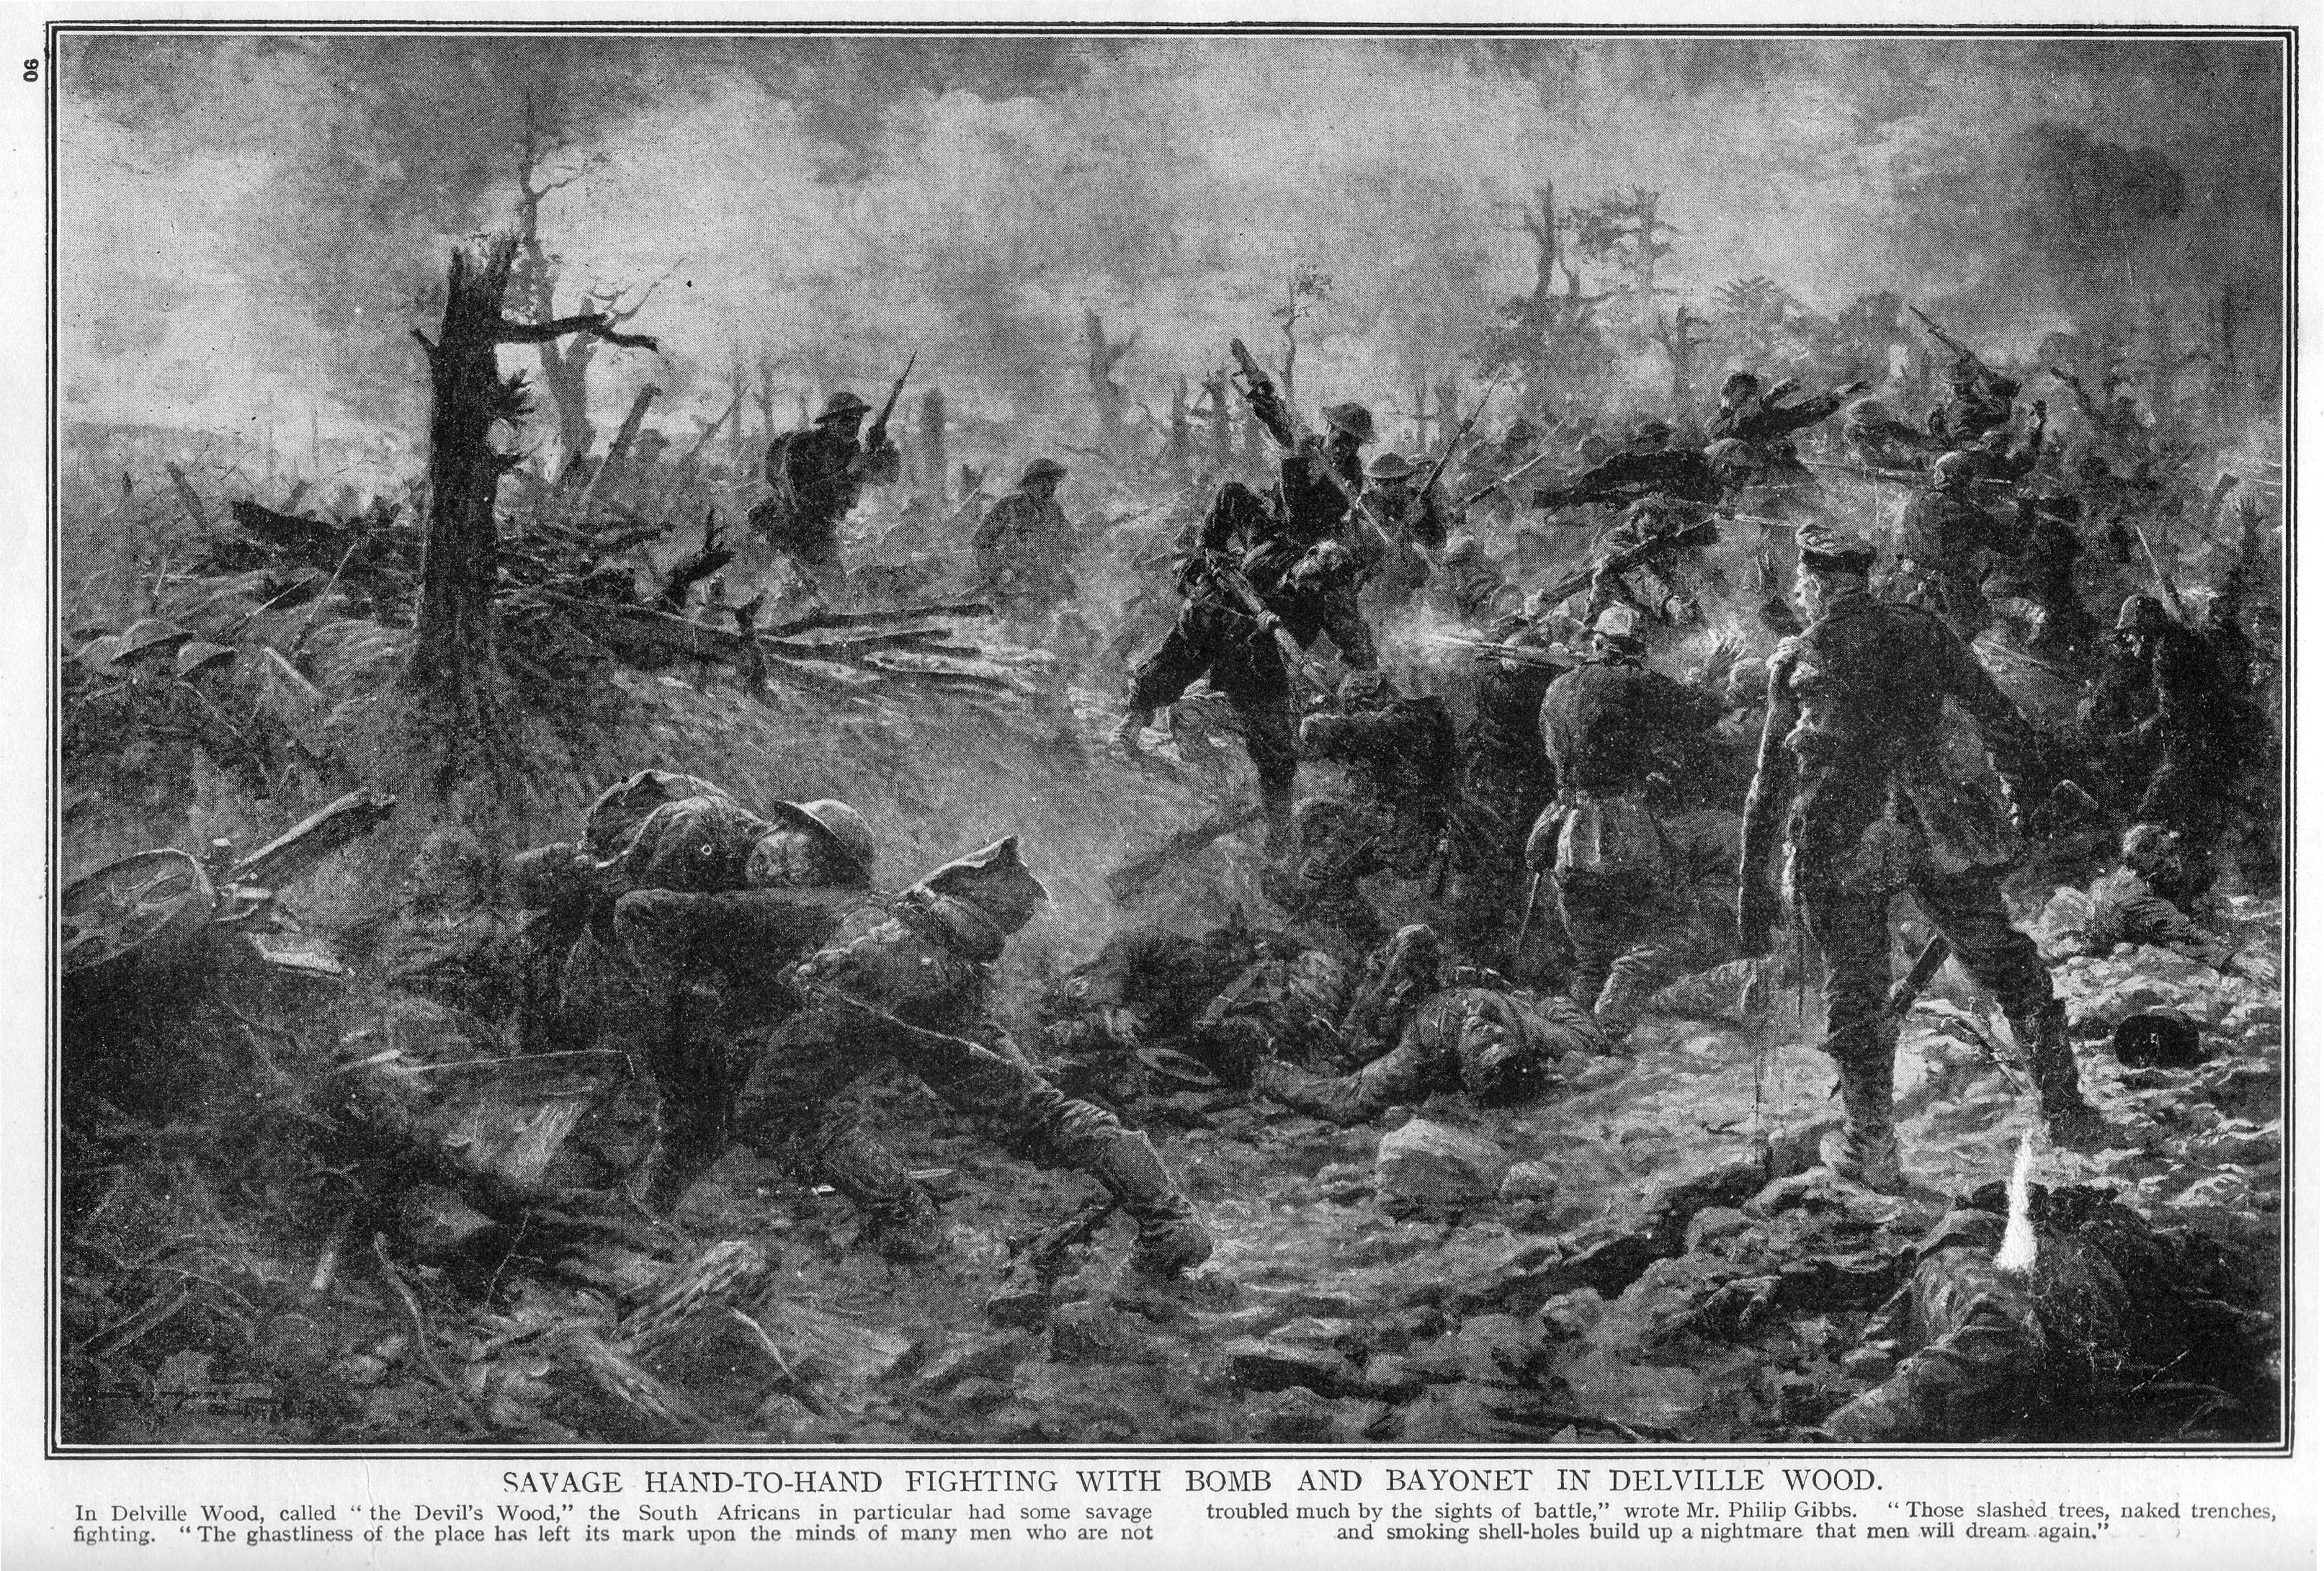 Battle of Delville Wood in July 1916 in World War II